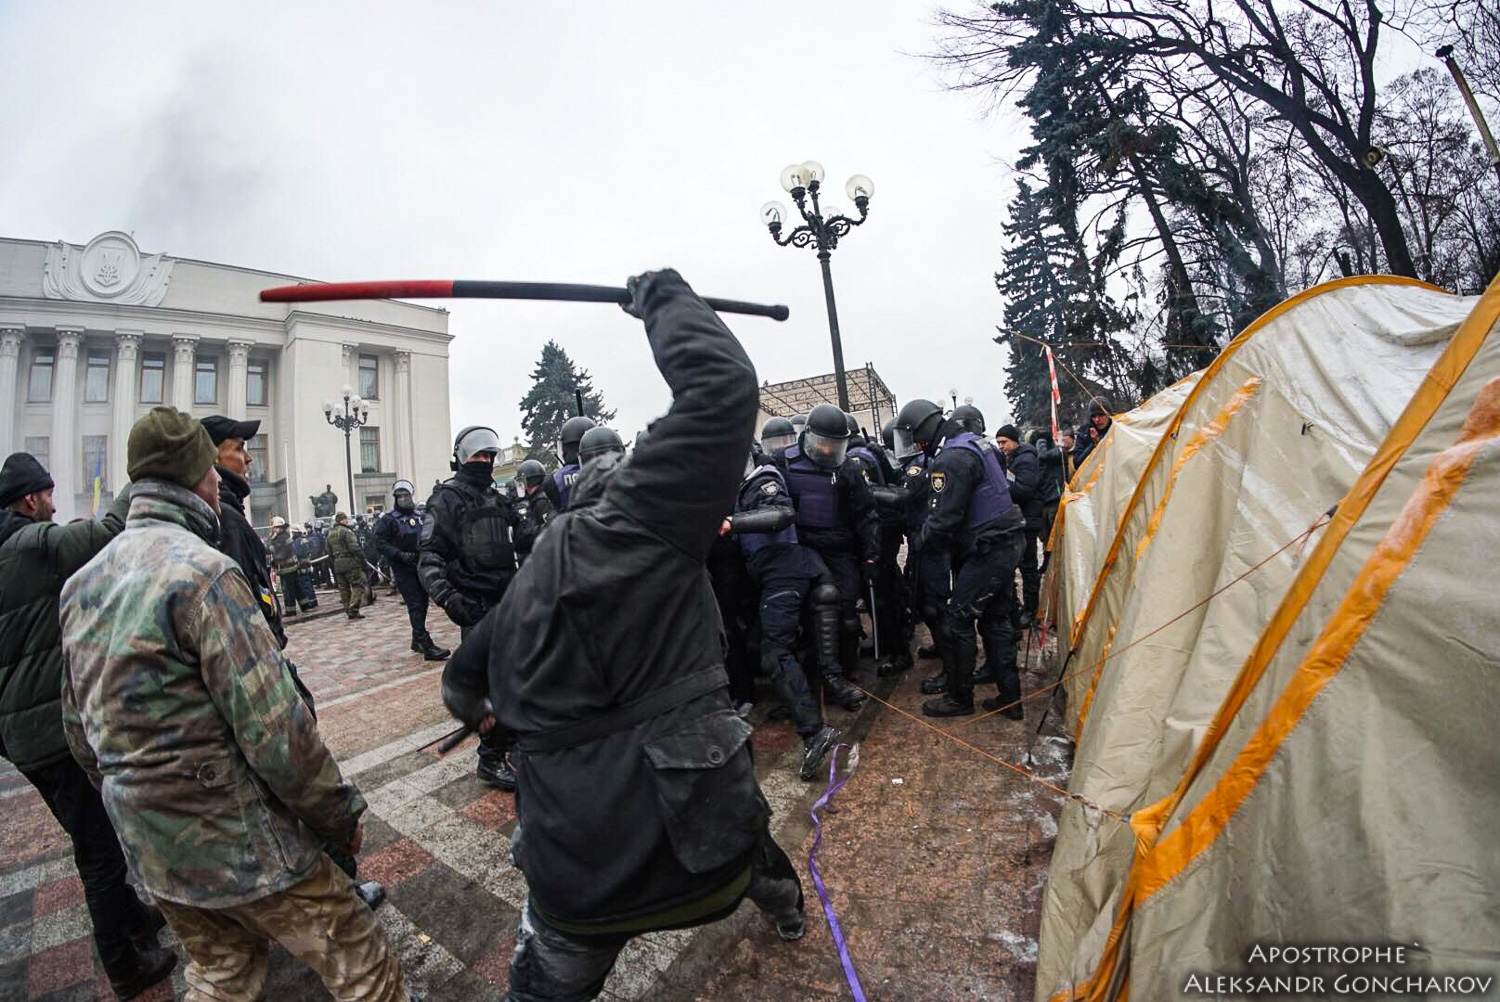 Donbas - Ukraine News in brief. Tuesday 16 January. [Ukrainian sources] 57ee843cb578bf3ee1e19a94e8e8df66